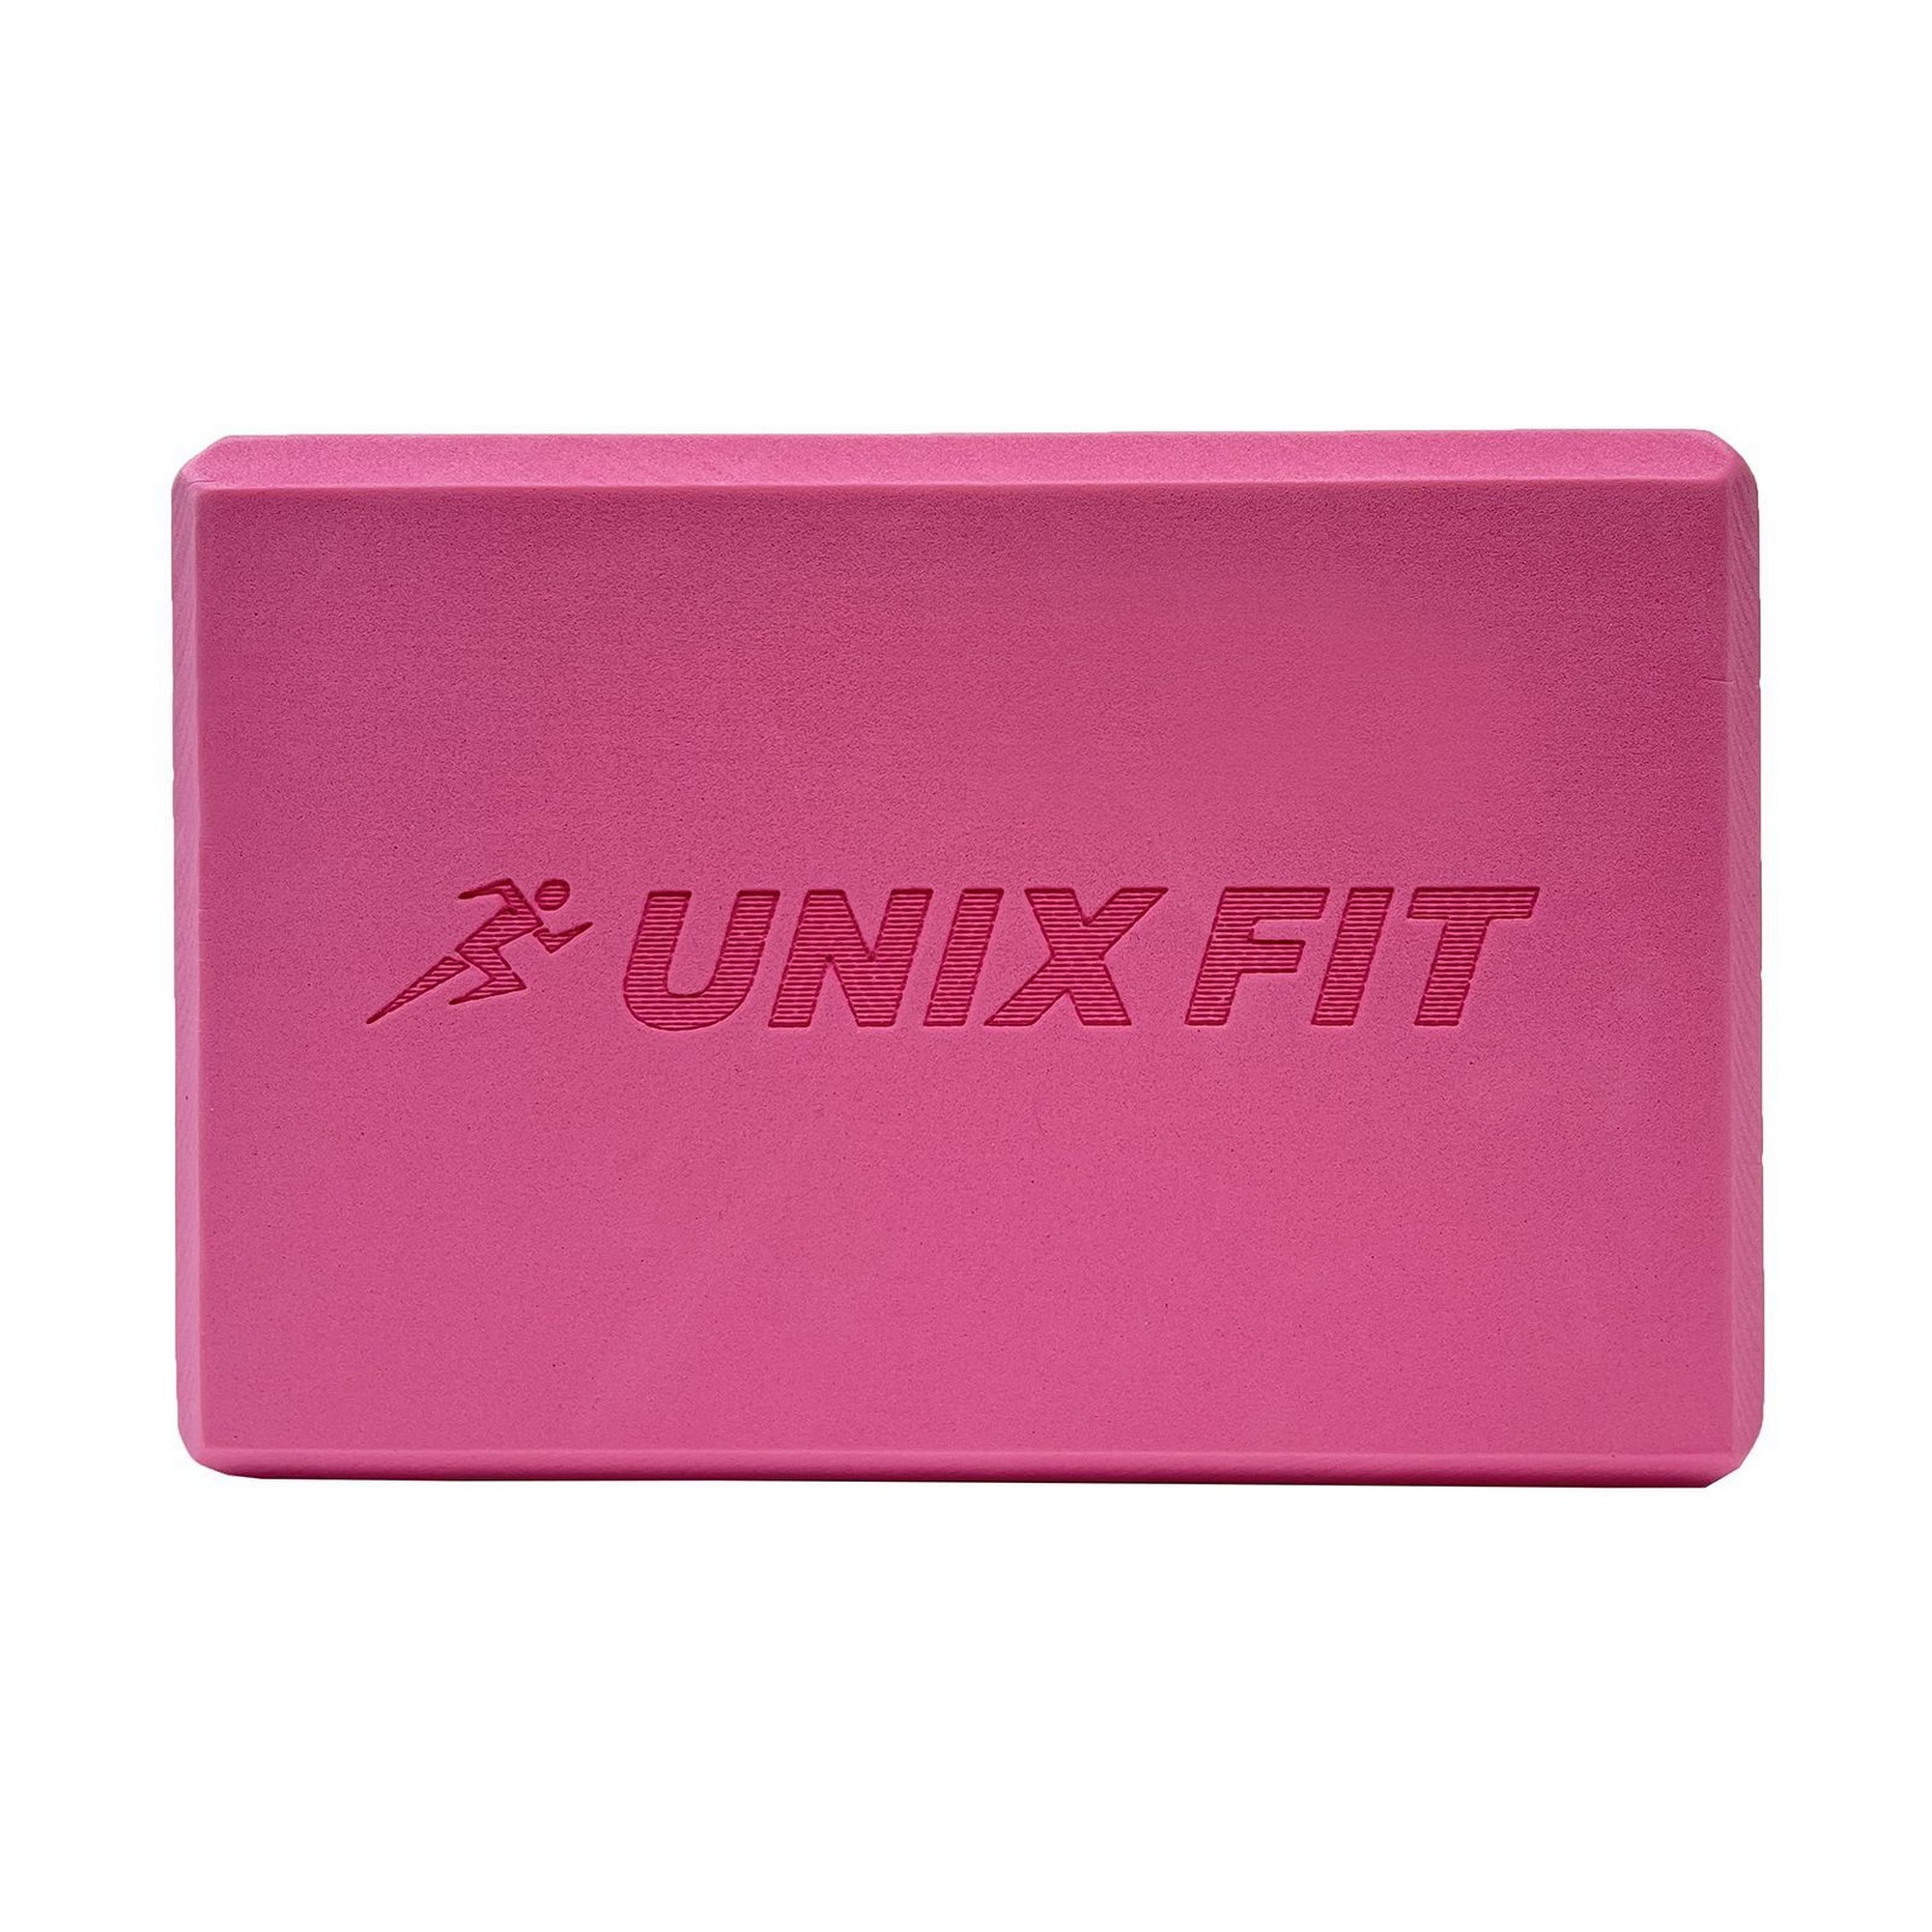 Блок для йоги и фитнеса 23х15х7см UnixFitt YBU200GPK розовый 2000_2000